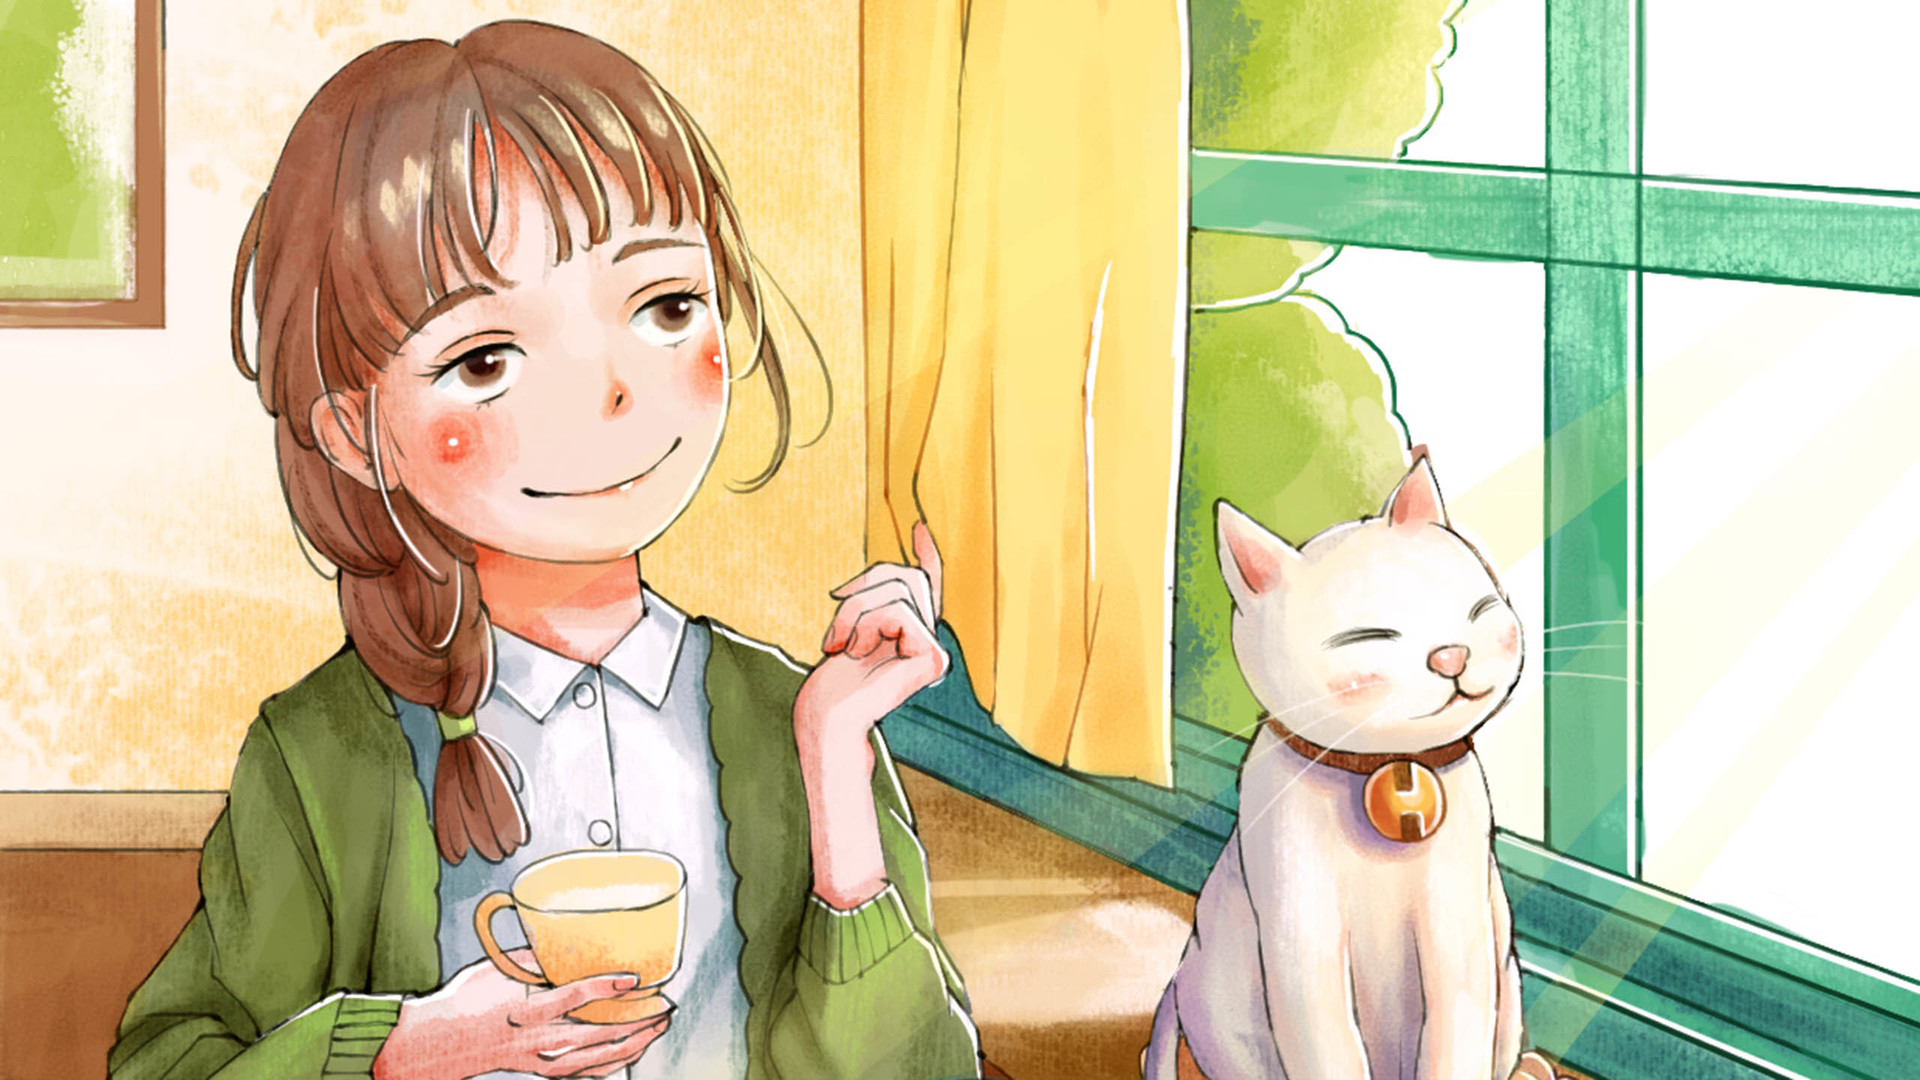 【少女与猫】小白猫与可爱的小女孩,插画壁纸.插画师:风子洛.侵权删.